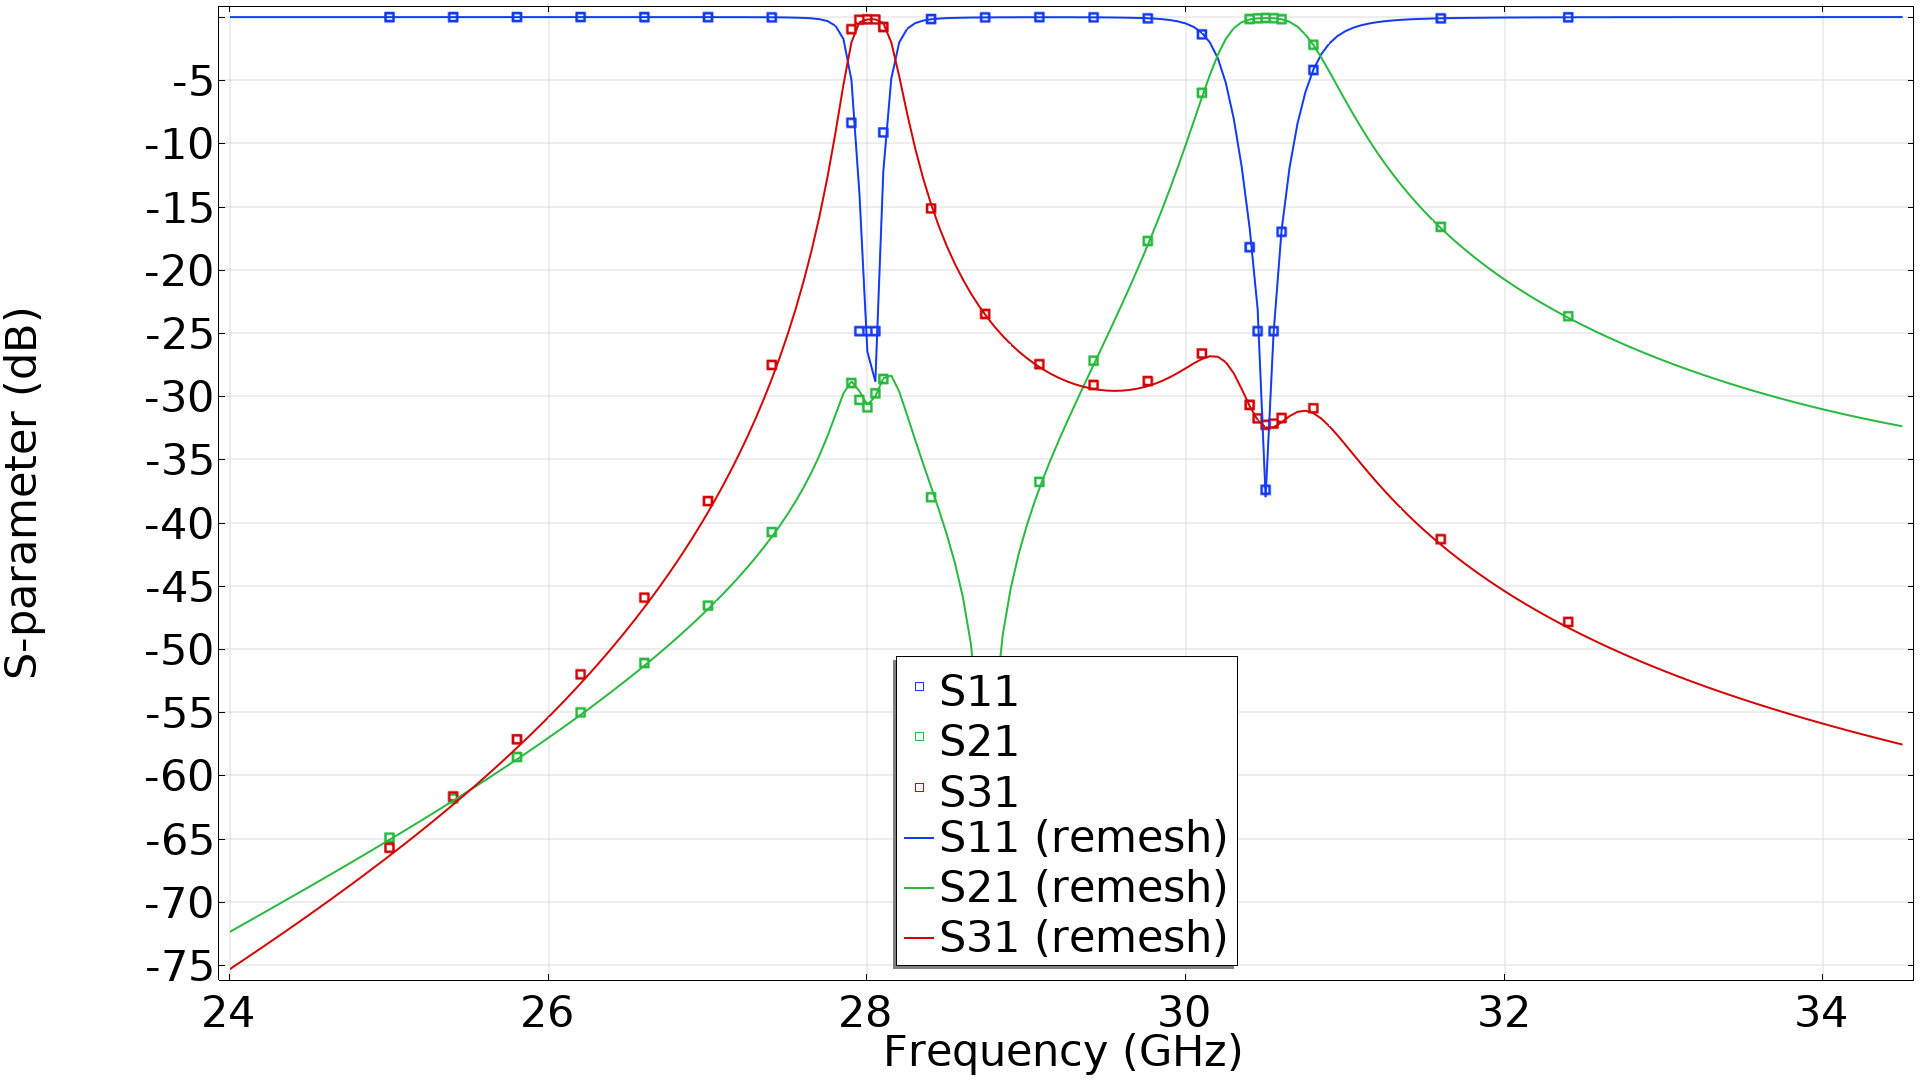 图表显示S-参数绘制为频率函数的图。